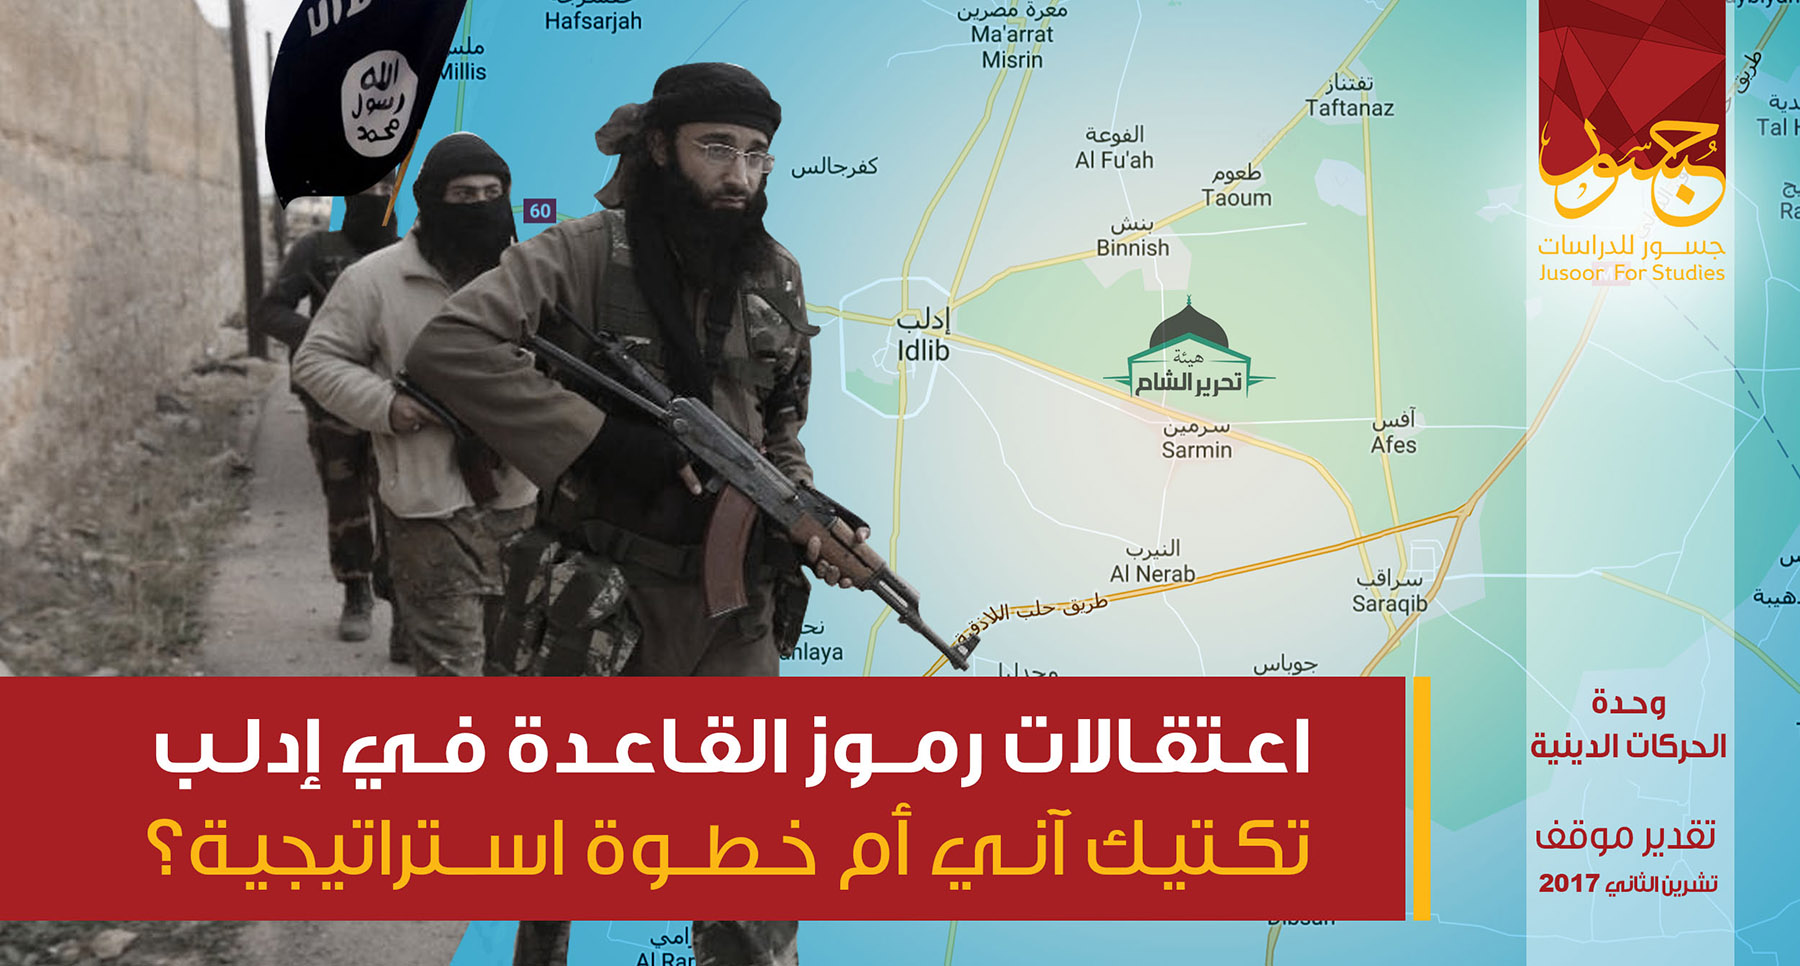 اعتقالات رموز القاعدة في إدلب ...تكتيك آني أم خطوة استراتيجية؟